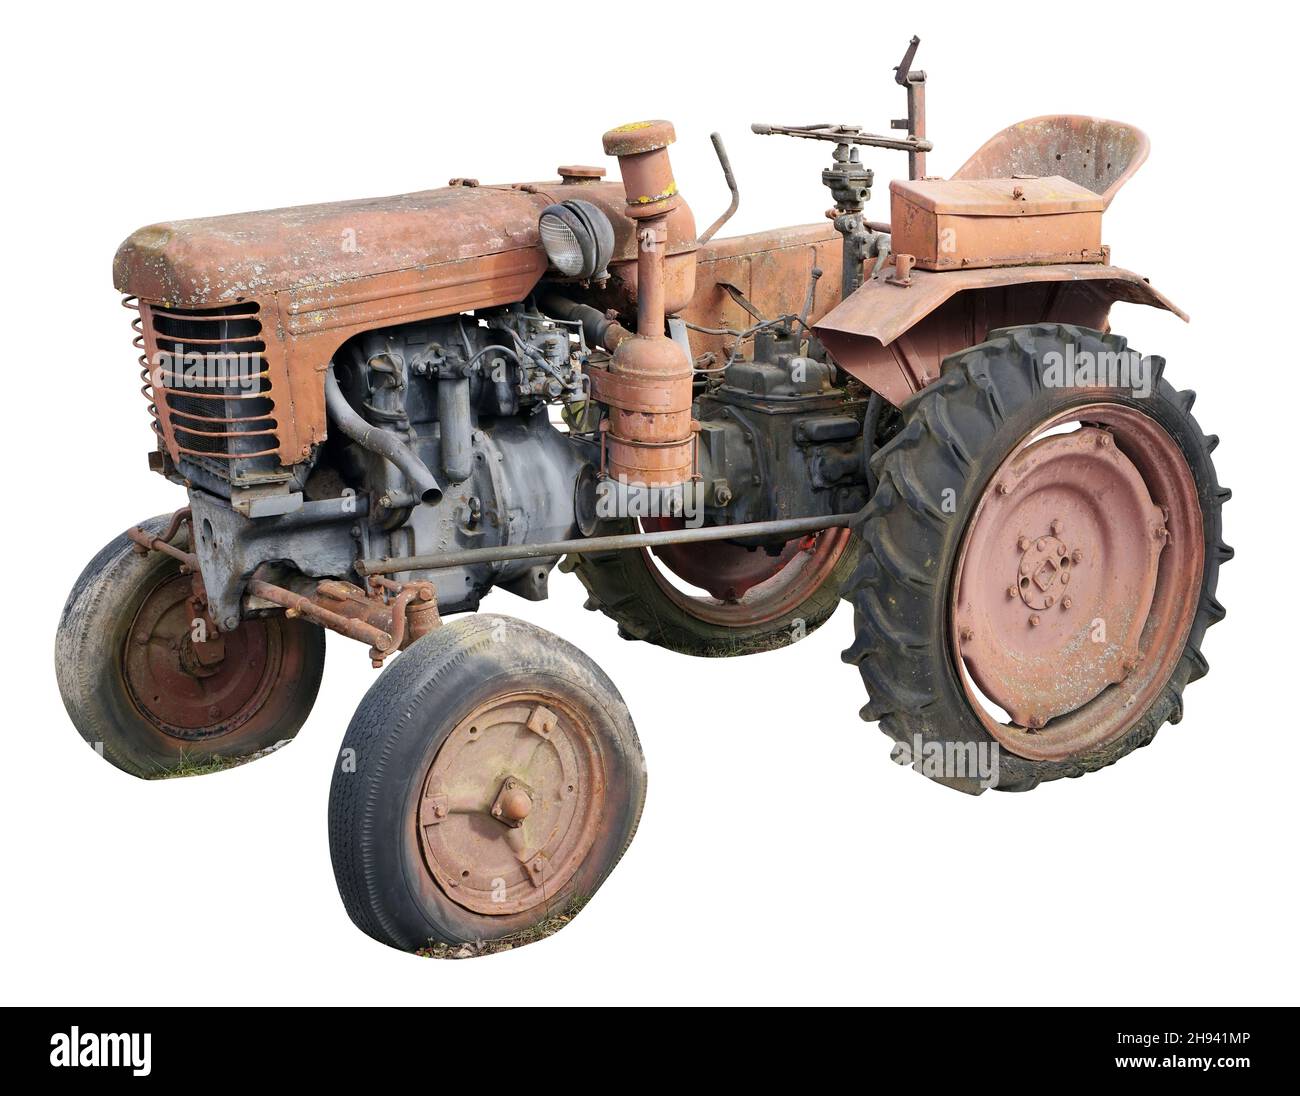 Petit tracteur rétro rouillé.L'équipement en acier est fabriqué il y a plus de 80 ans.Production de masse.Isolé sur blanc Banque D'Images